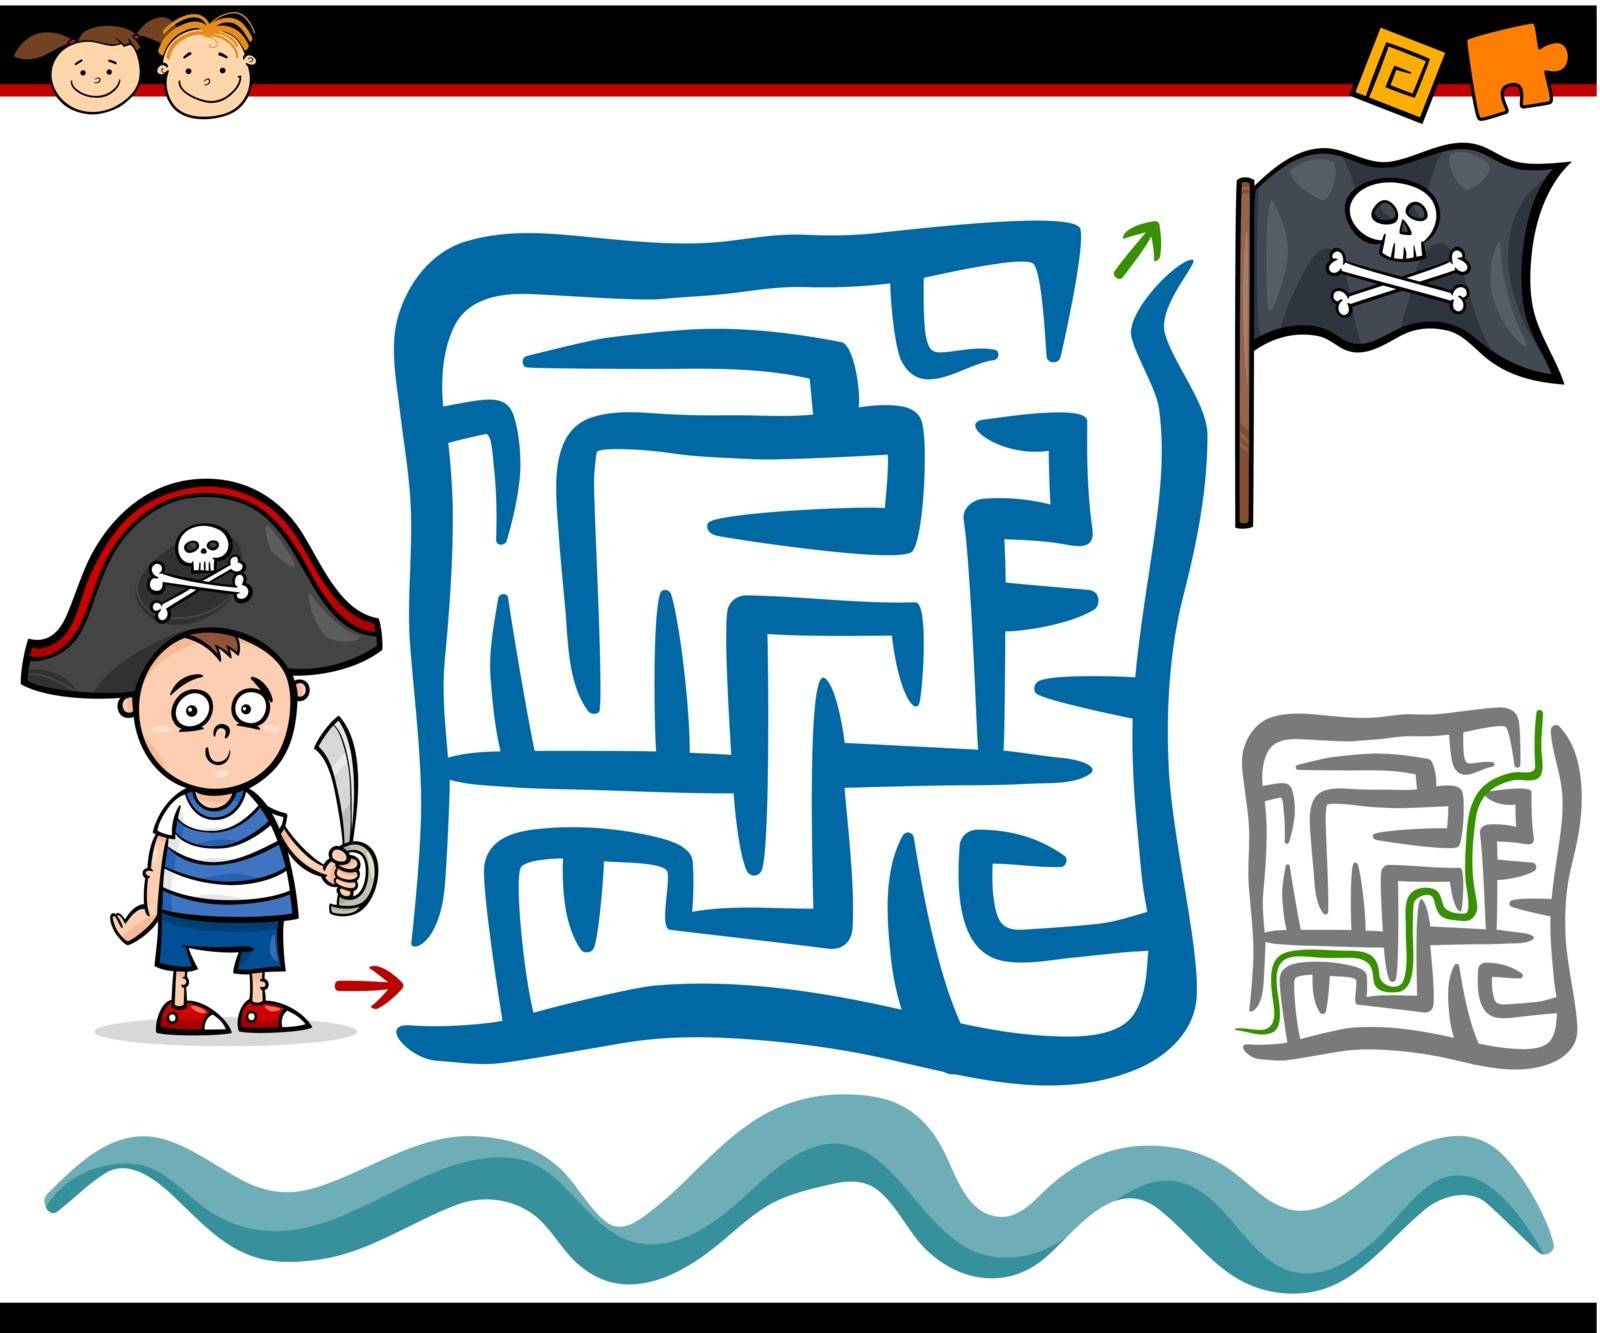 cartoon maze or labyrinth game by izakowski